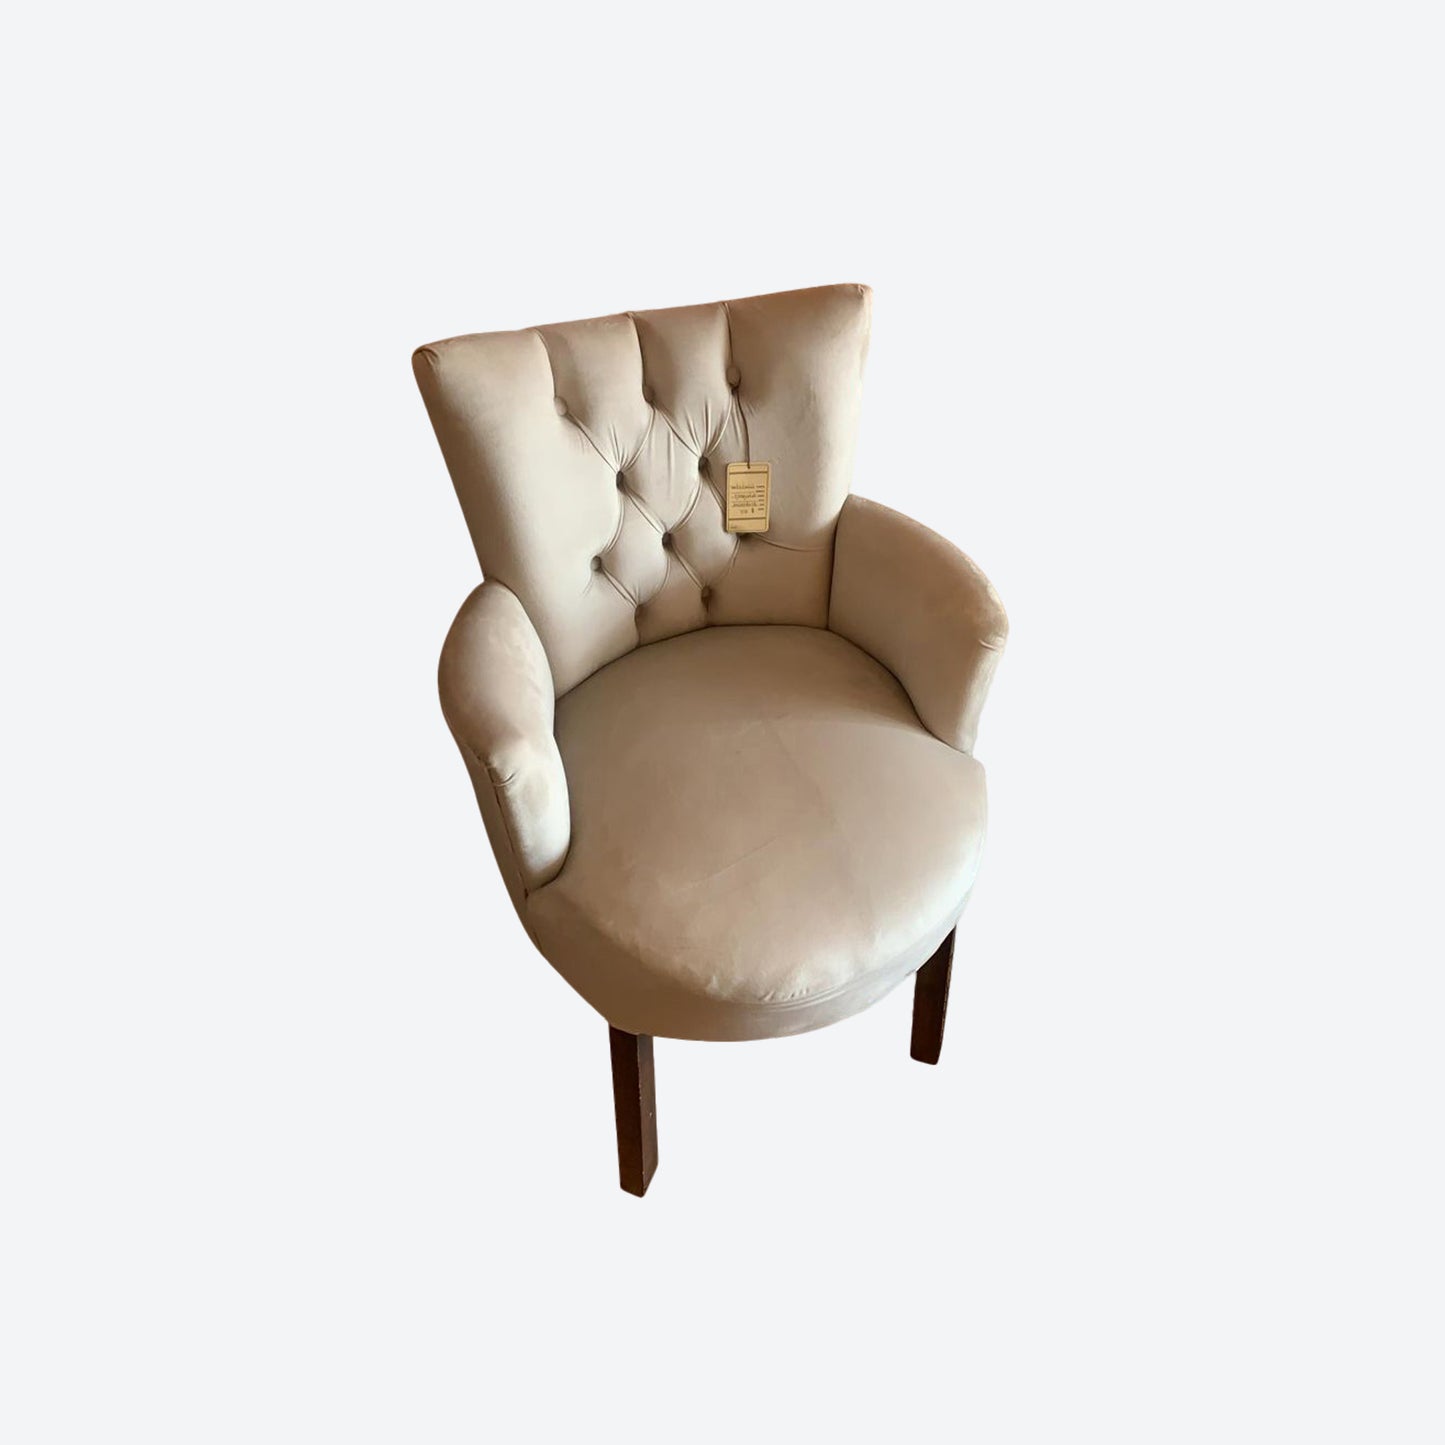 Light Gray Tufted Velvet Accent Chair  [Mesquite Wood Legs And Frame]- SK- SKU 1151